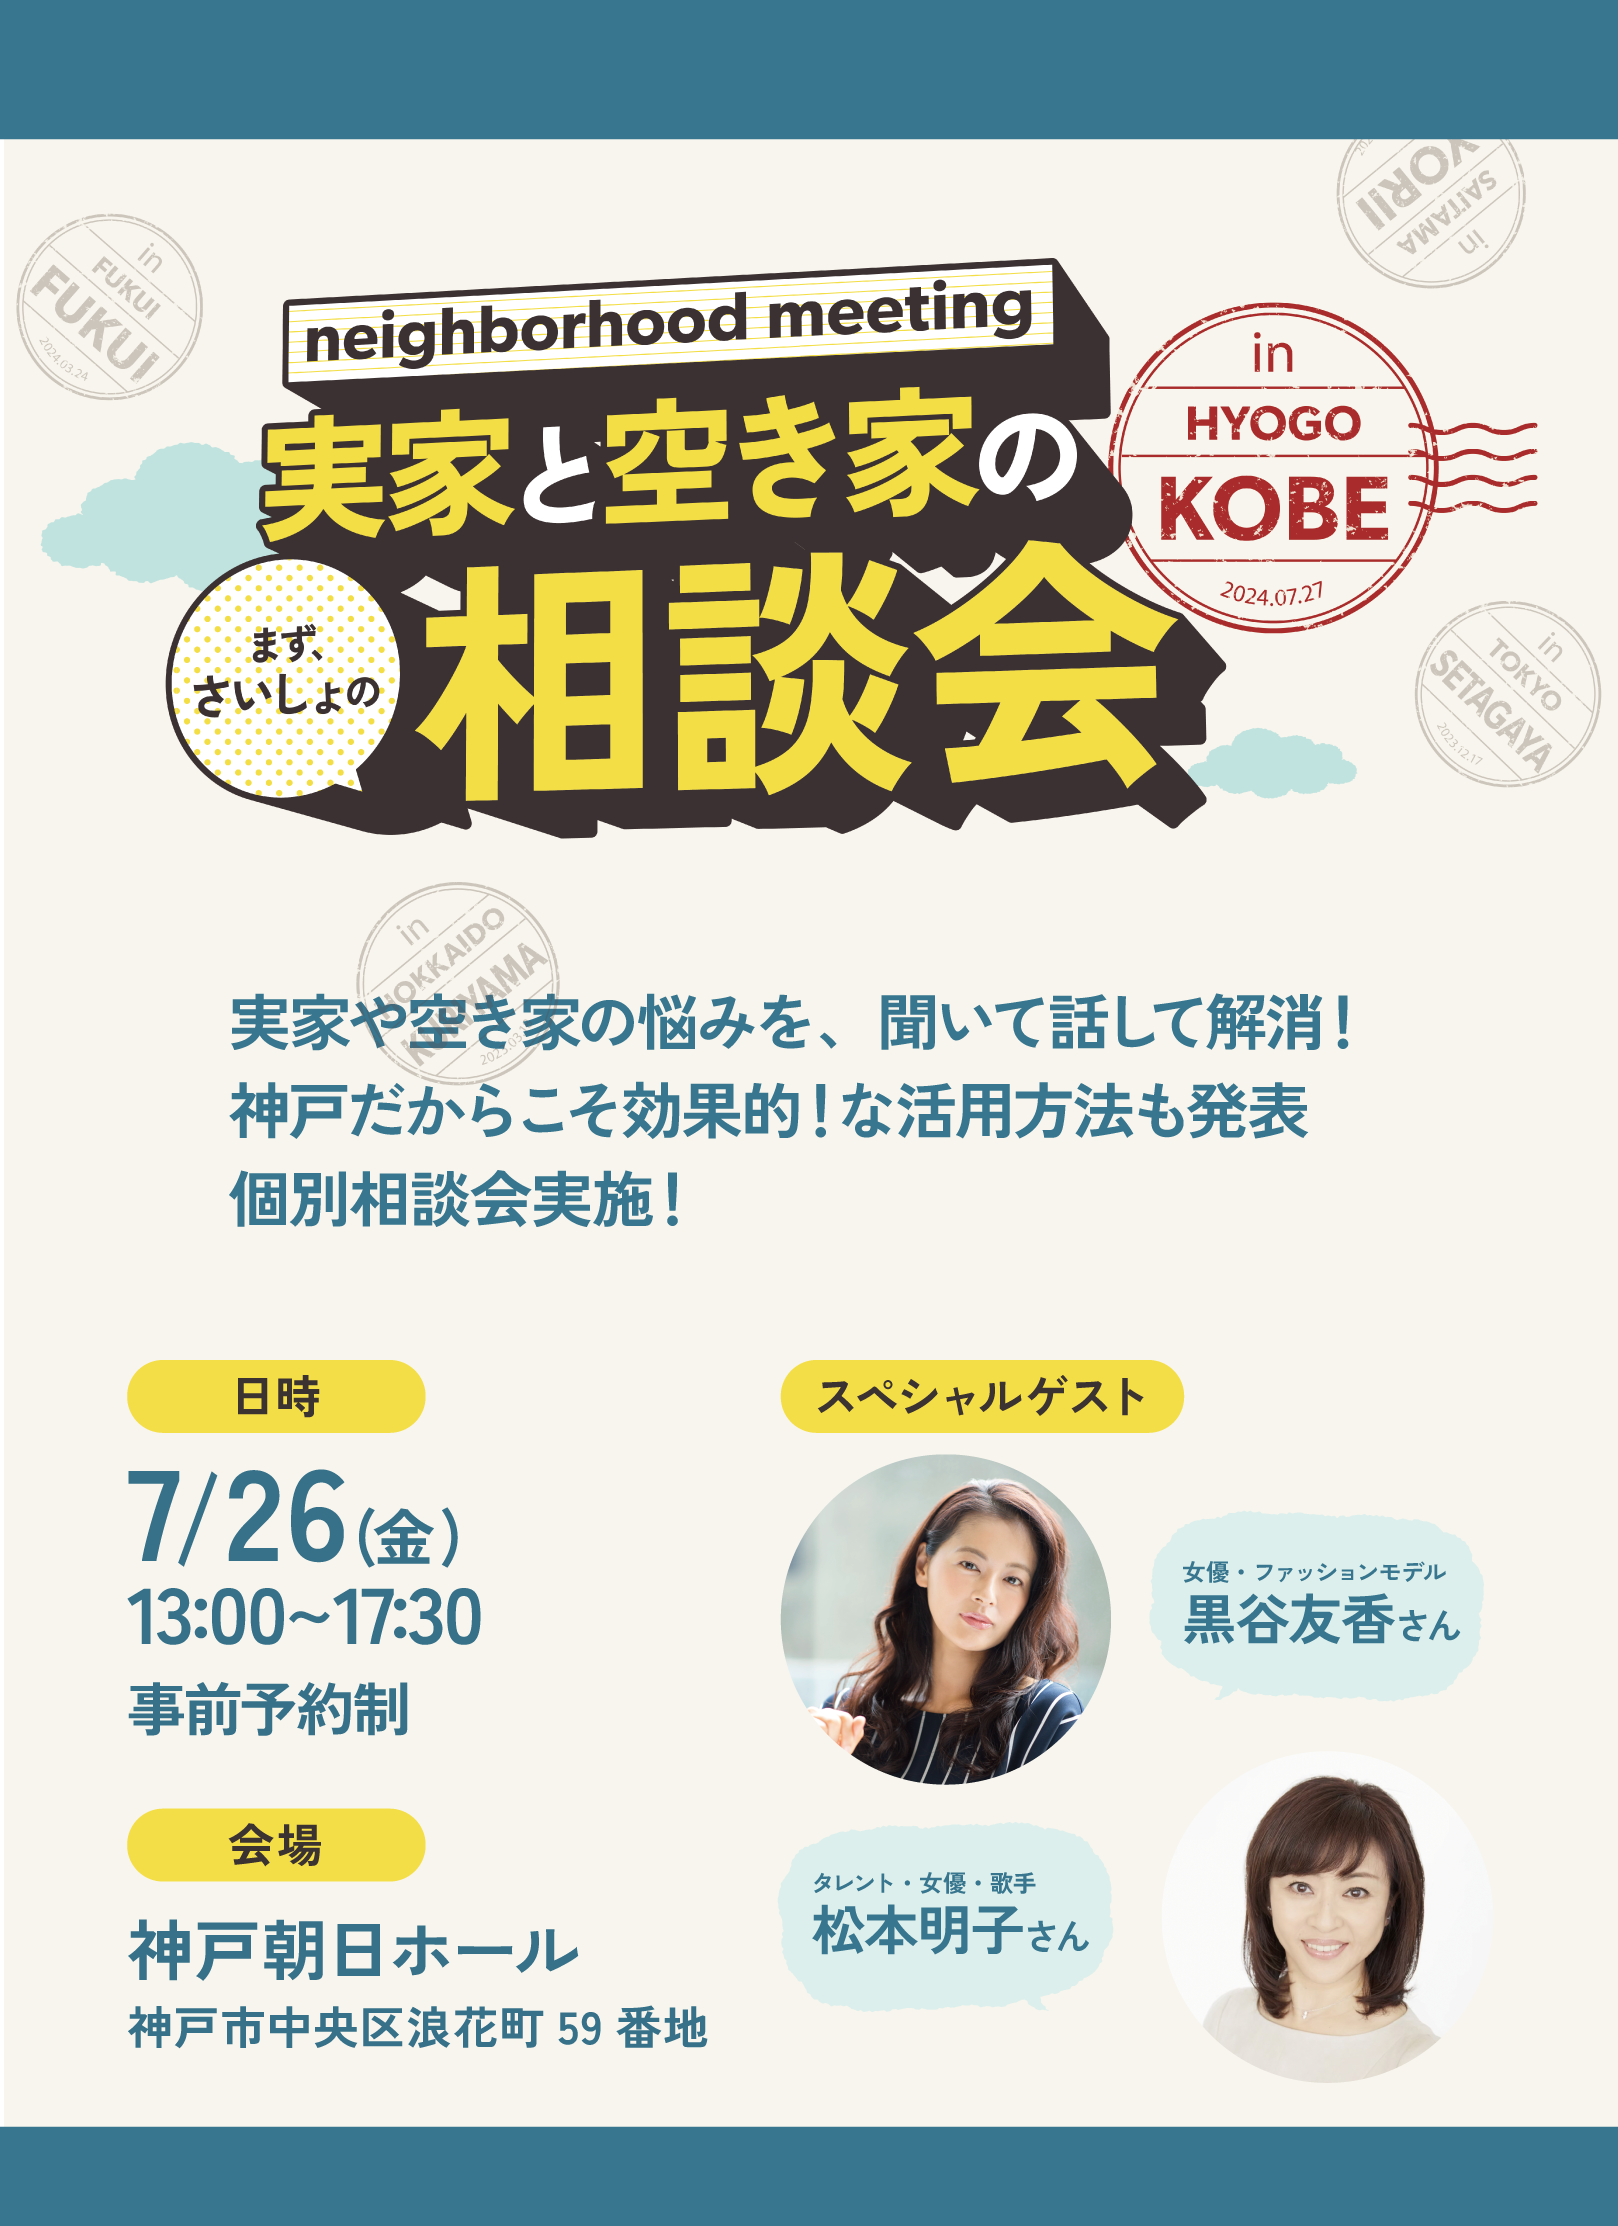 7/26開催！ 関西/中国で空き家に困っていたら、このイベントで簡単相談と講演を聞いてみて。女優・松本明子さ...